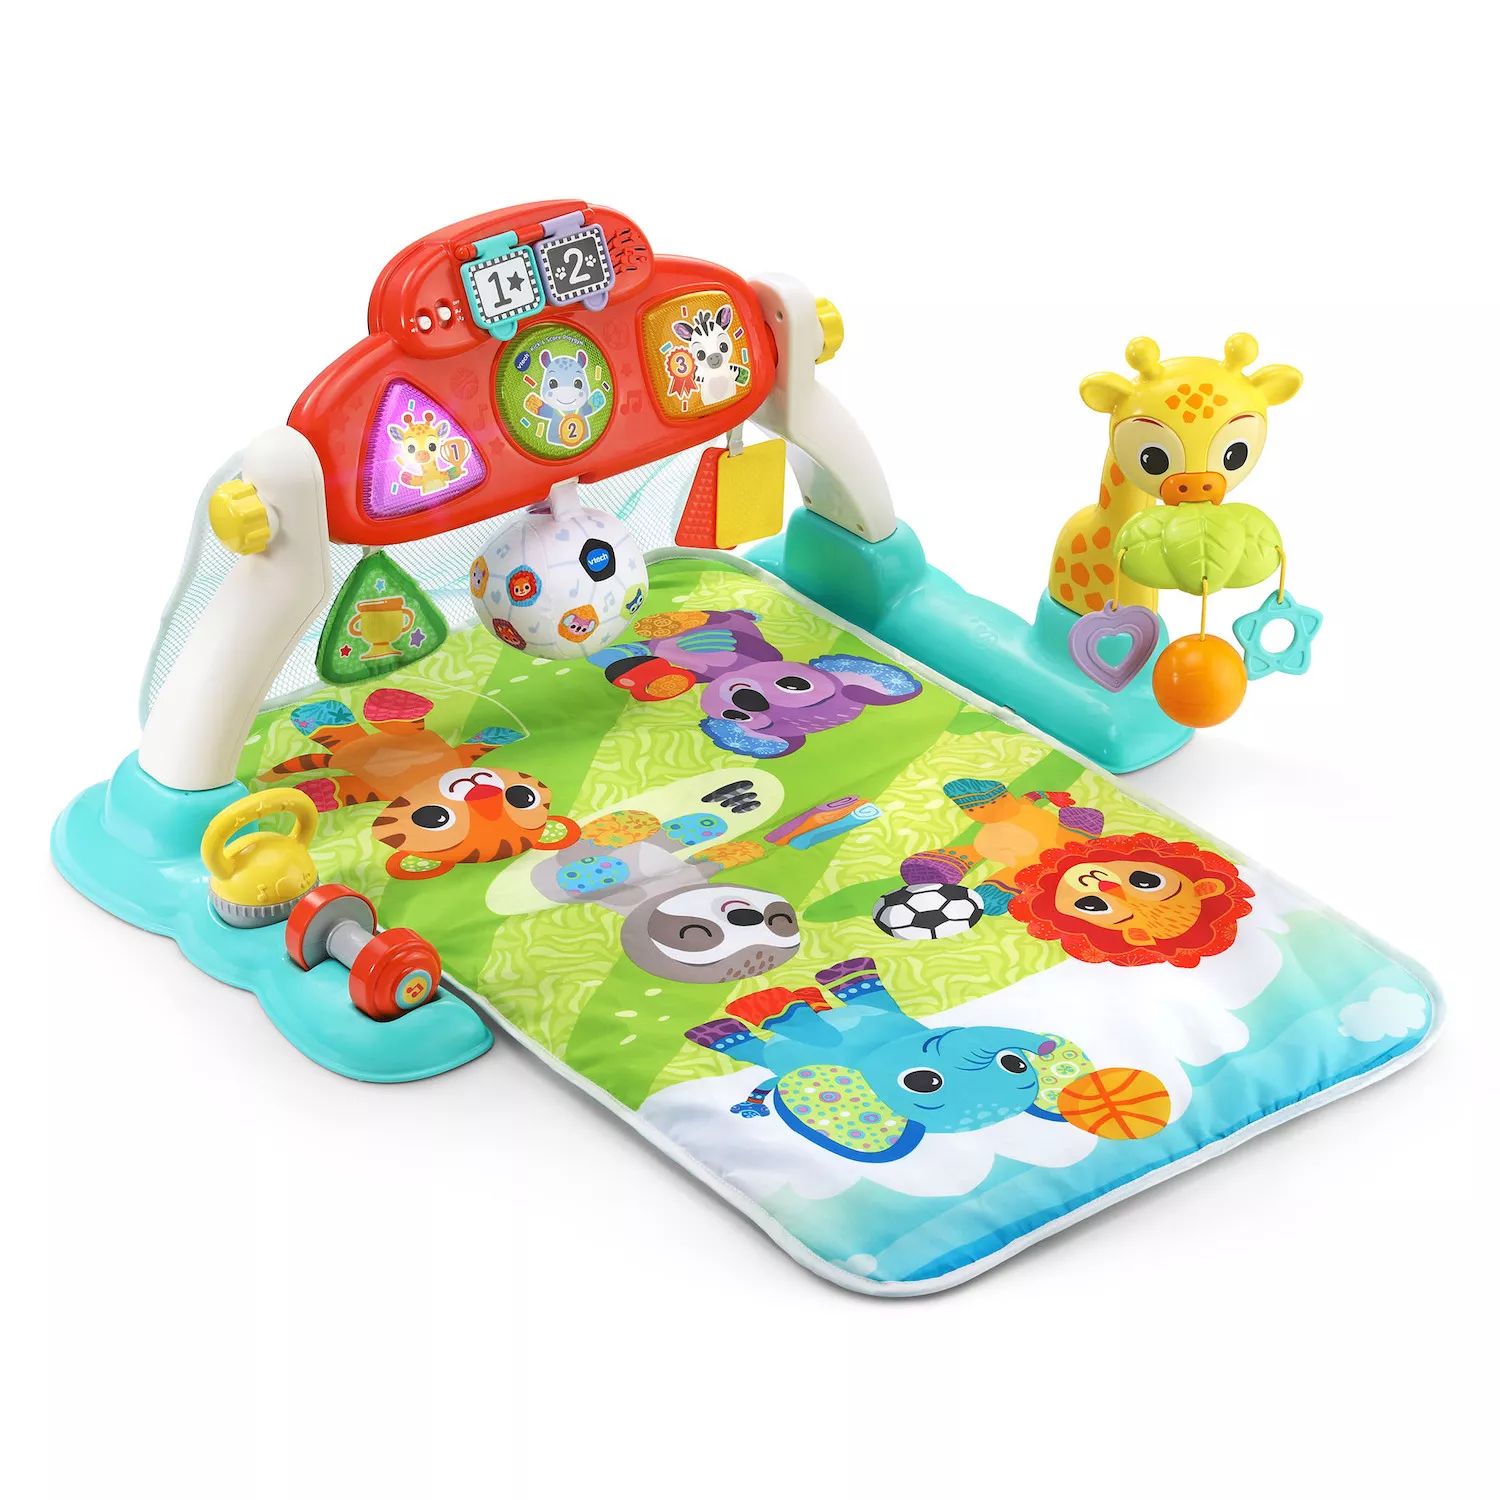 Интерактивная детская игрушка Kick & Score Playgym VT International цена и фото